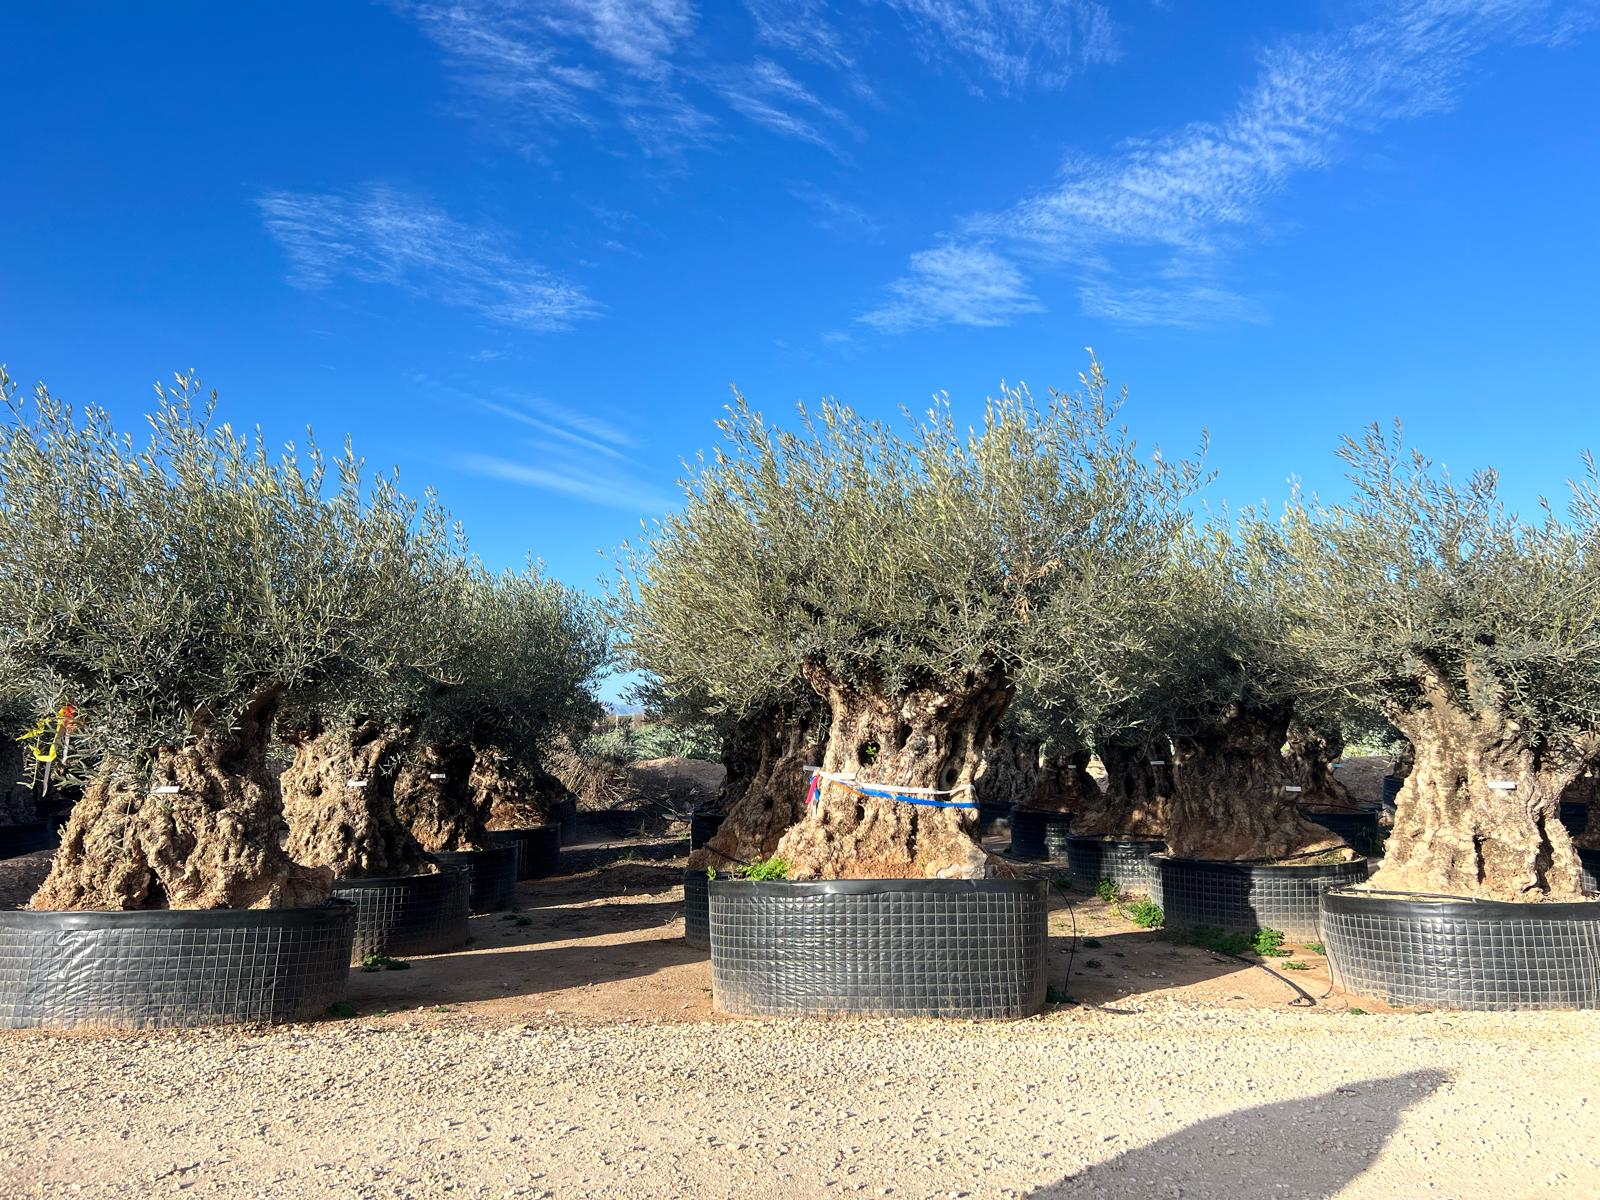 Centenary olive trees